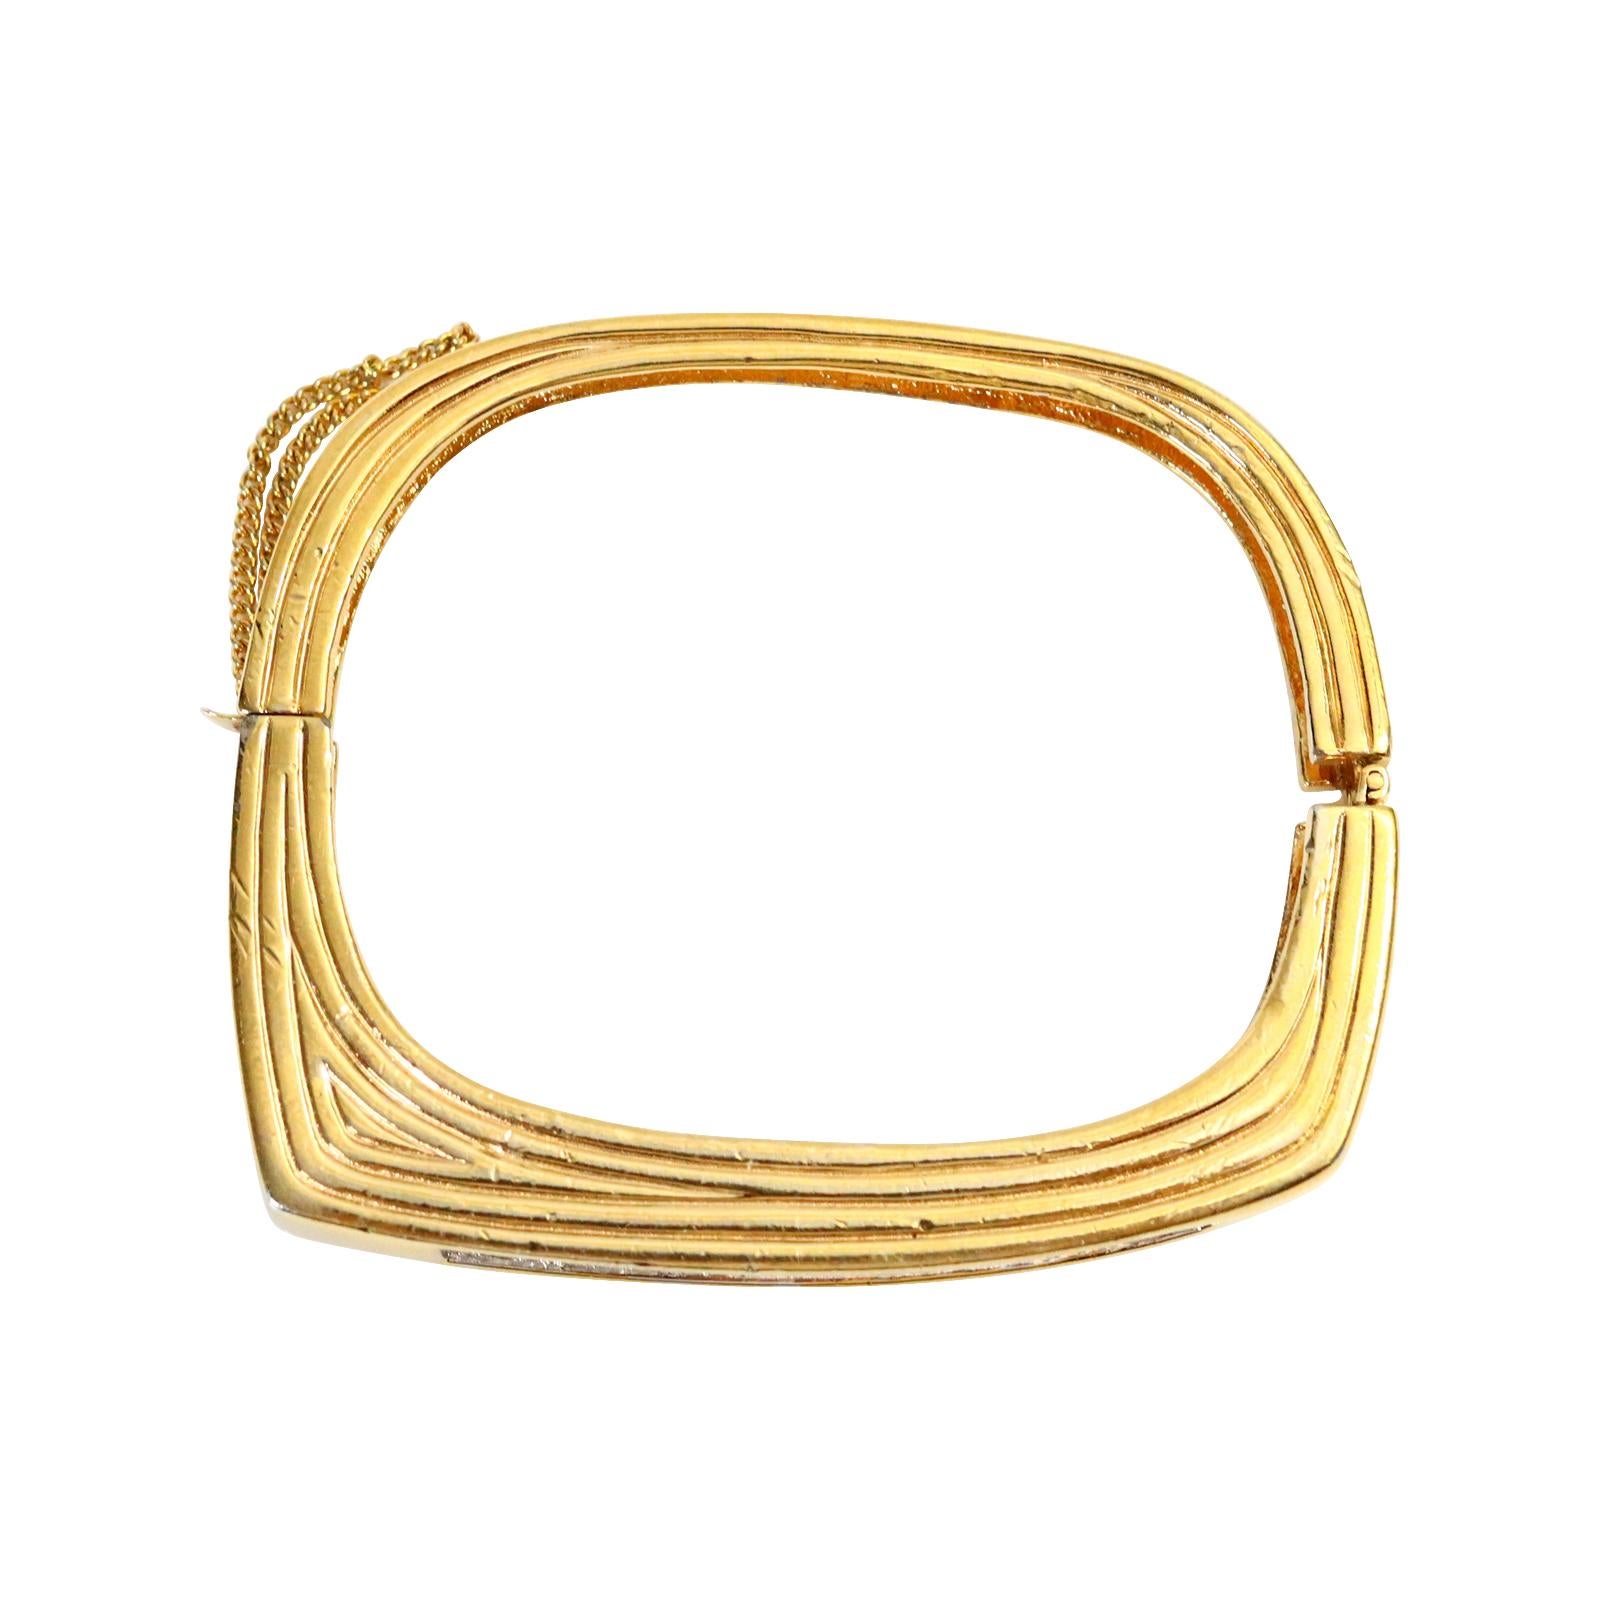 Vintage Panetta Gold Diamante Armband CIRCA 1970er Jahre.  Die Außenseite ist quadratisch mit eingelassenen Pflastersteinen, während die Innenseite ein Oval ist, so dass sie bequem zu tragen ist. Der Stil ist so gut gemacht, dass er tatsächlich wie